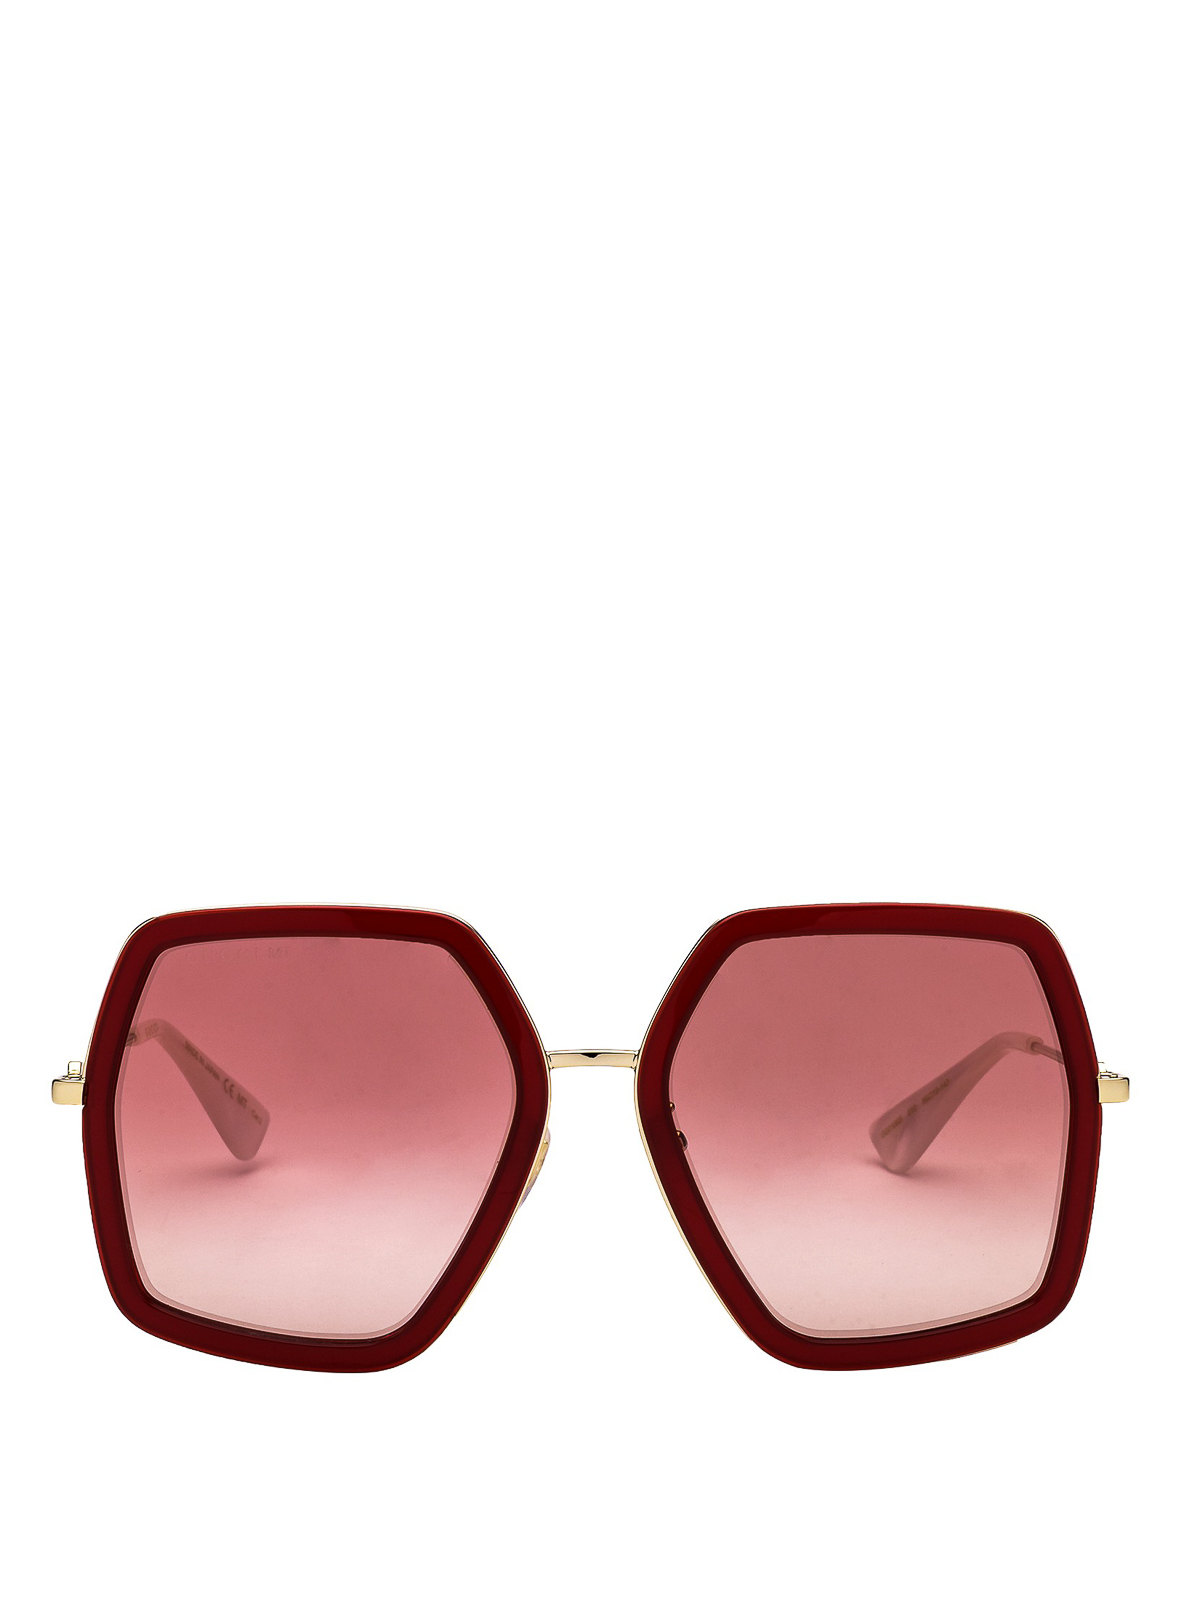 gucci sunglasses oversized square